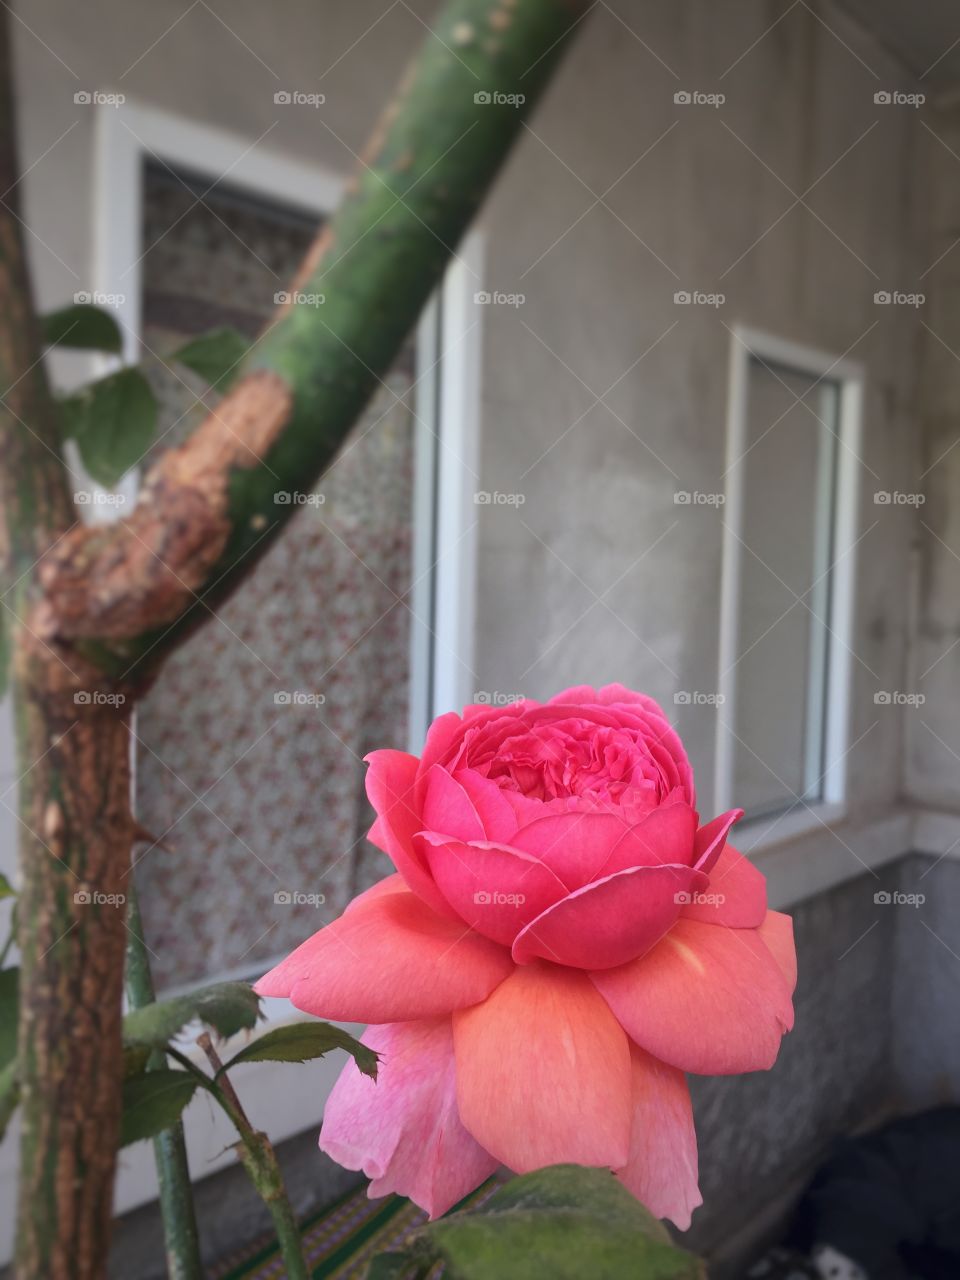 Pink rose in my garden 